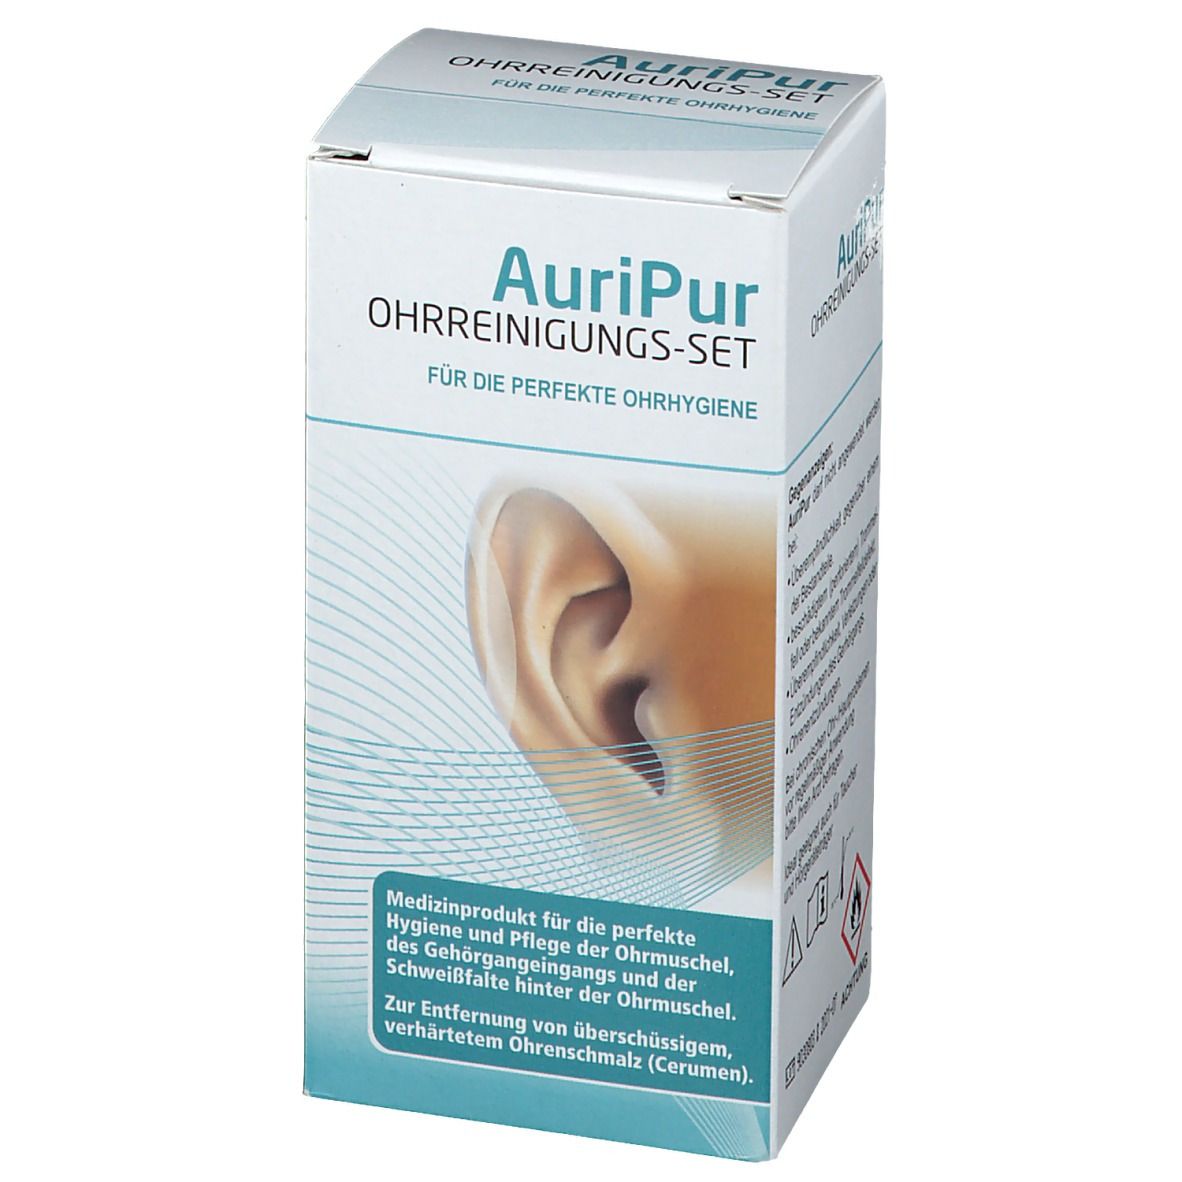 AuriPur Ohrreinigungs-Set